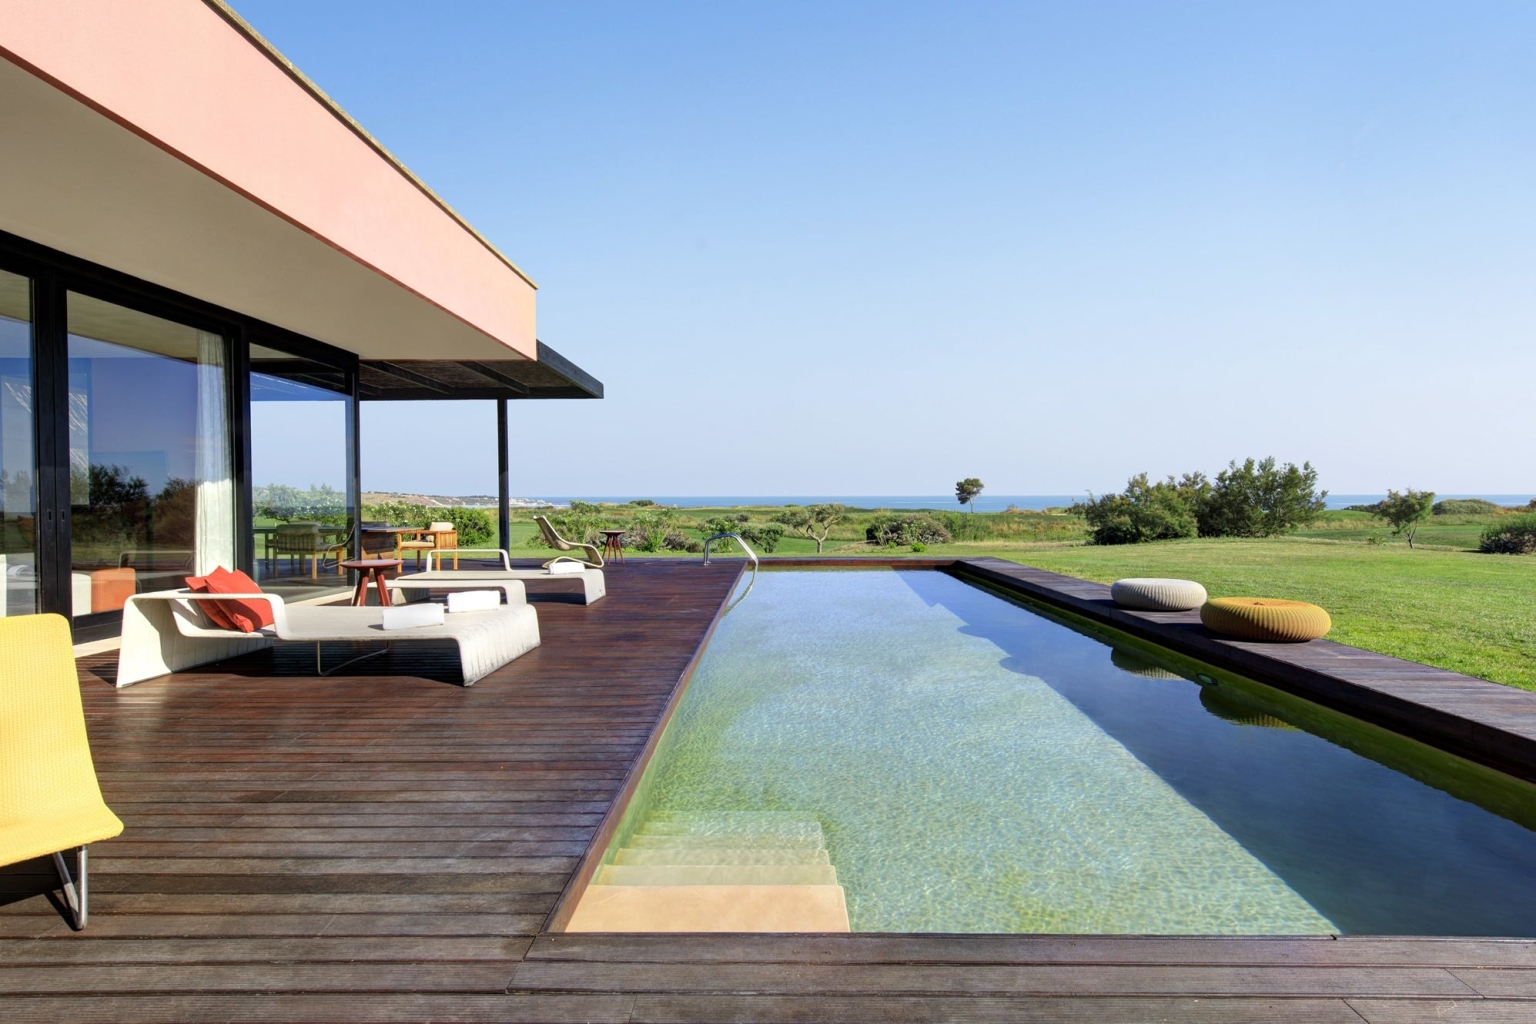 Sizilien Verdura Resort Golf Roccoforte Sciacca Luxus Qualität hochwertig Golfplatz Meer Pool privat